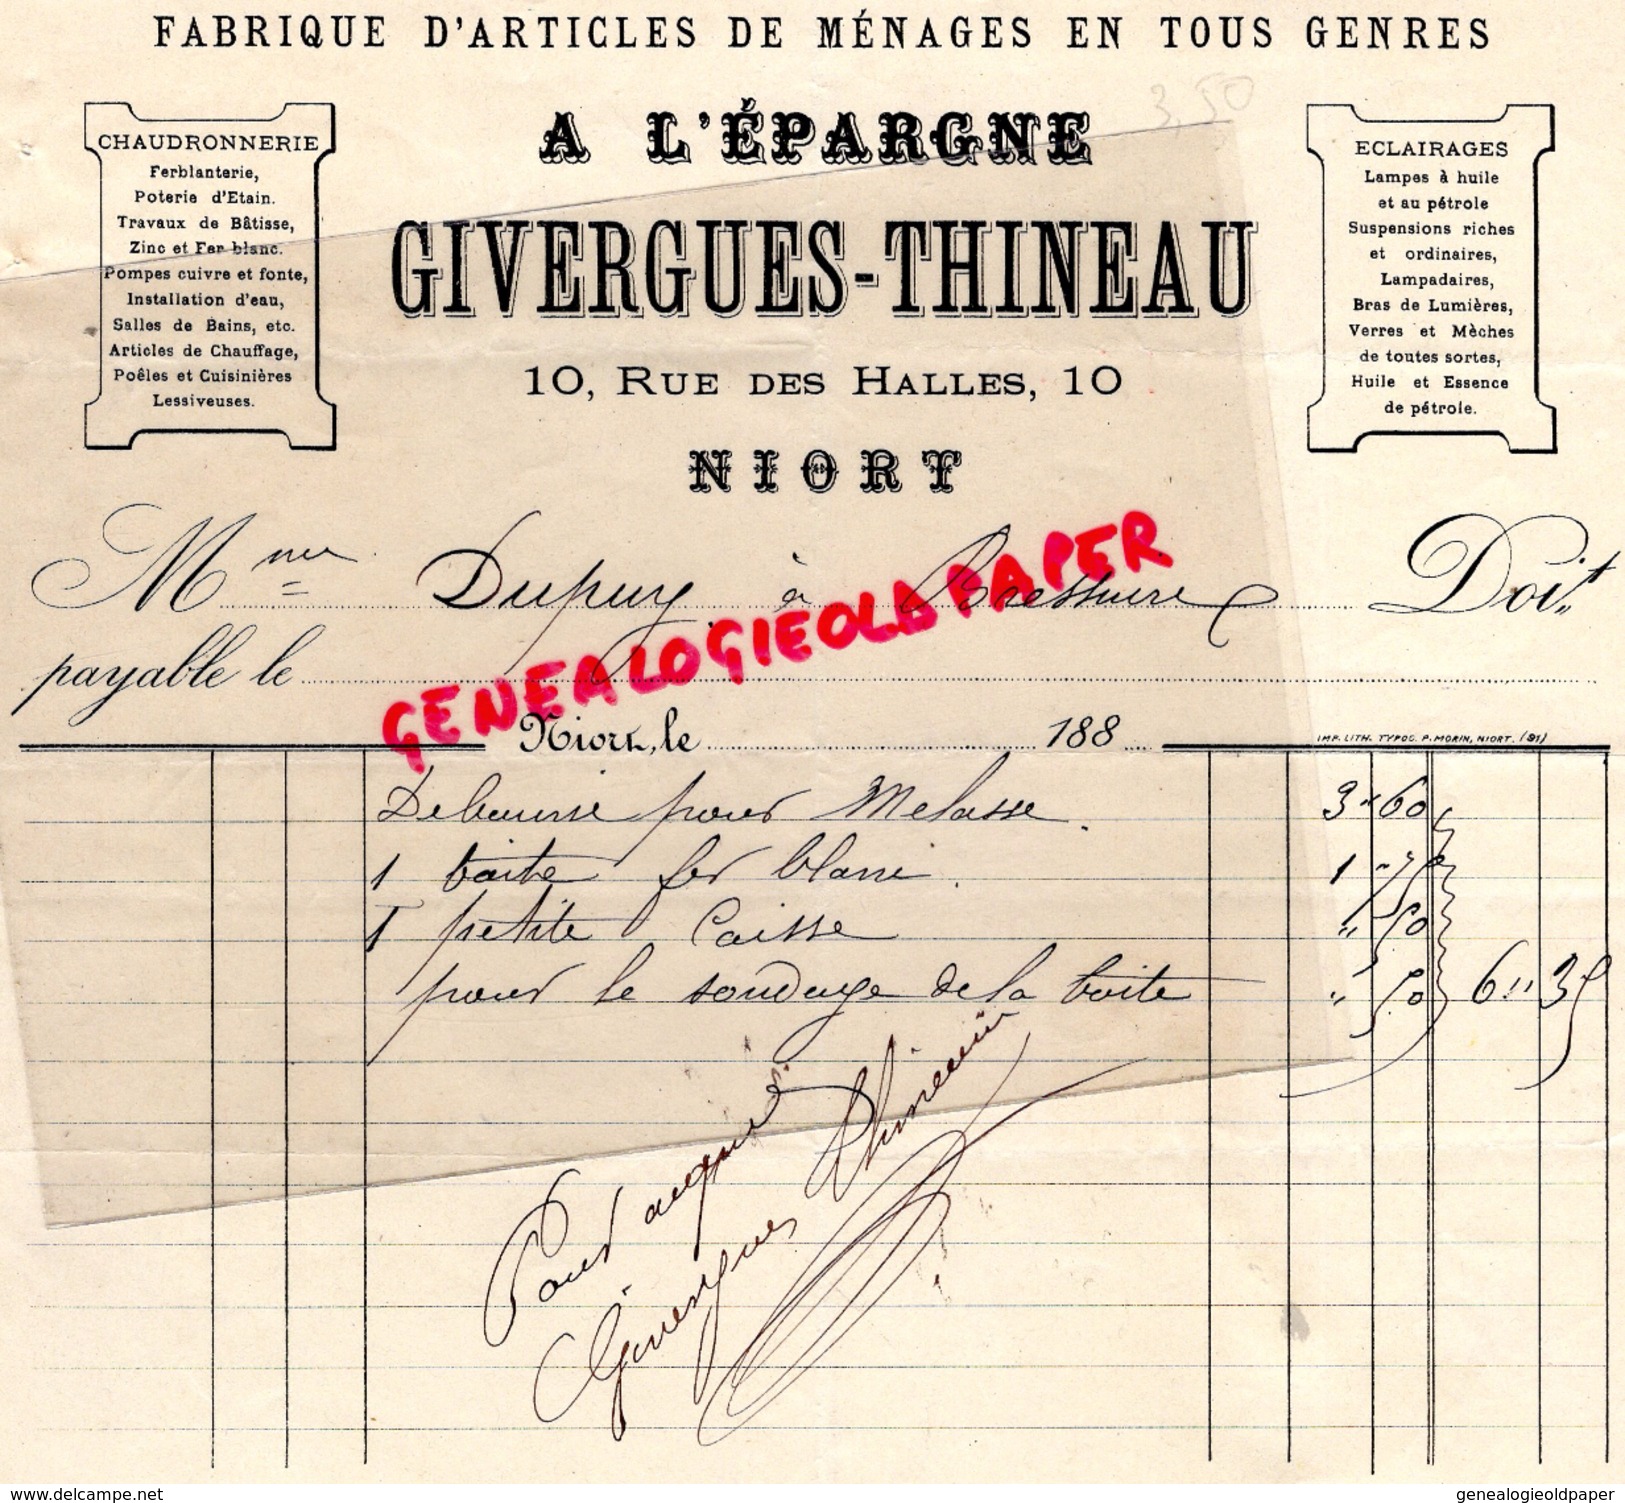 79- NIORT - FACTURE GIVERGUES THINEAU- FABRIQUE ARTICLES MENAGES- A L' EPARGNE- CHAUDRONNERIE-10 RUE DES HALLES- 1880 - Old Professions